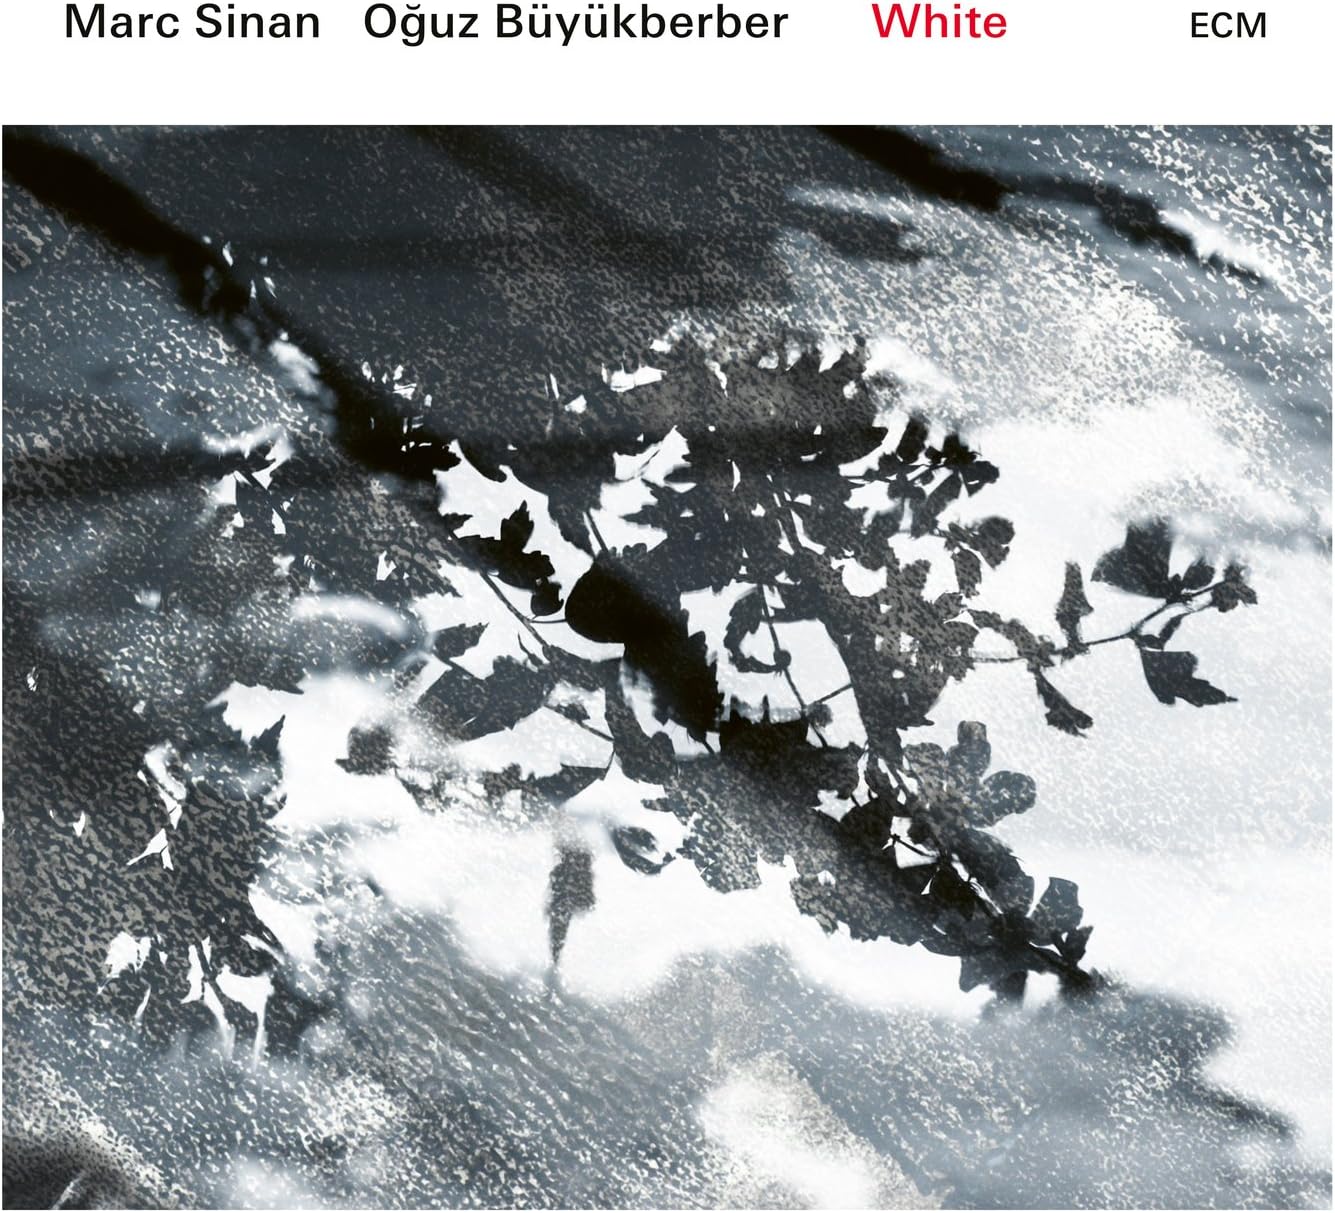 White | Marc Sinan, Oguz Buyukberber